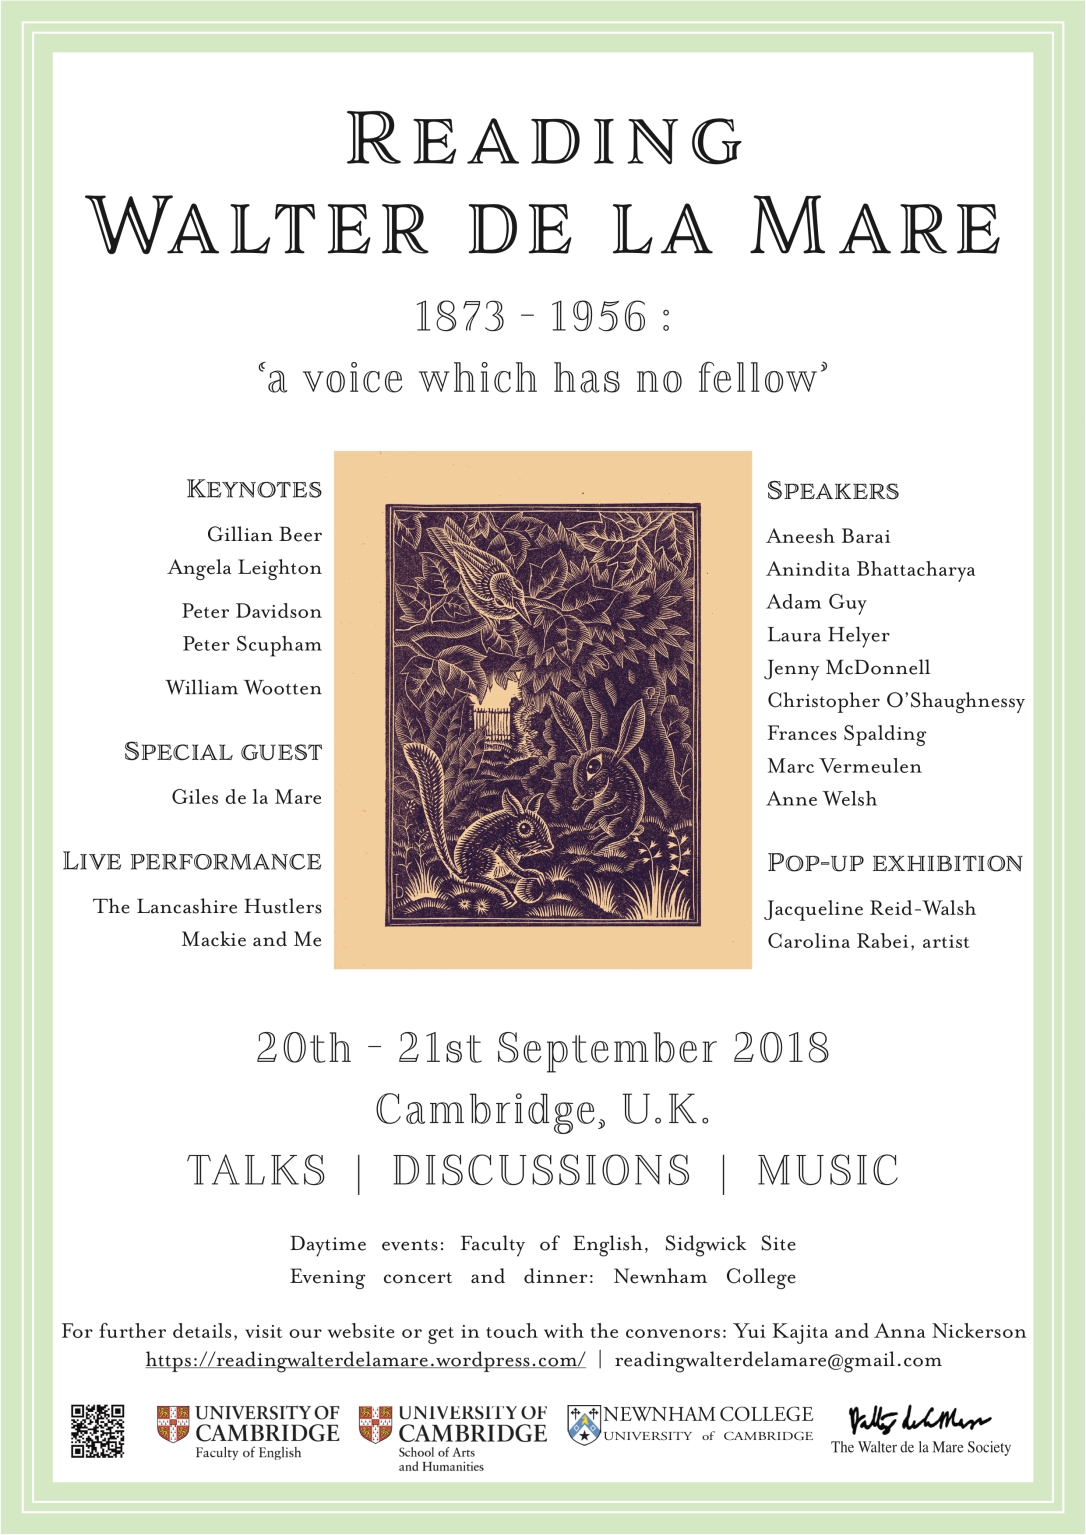 Reading Walter de la Mare - Full Poster.jpg